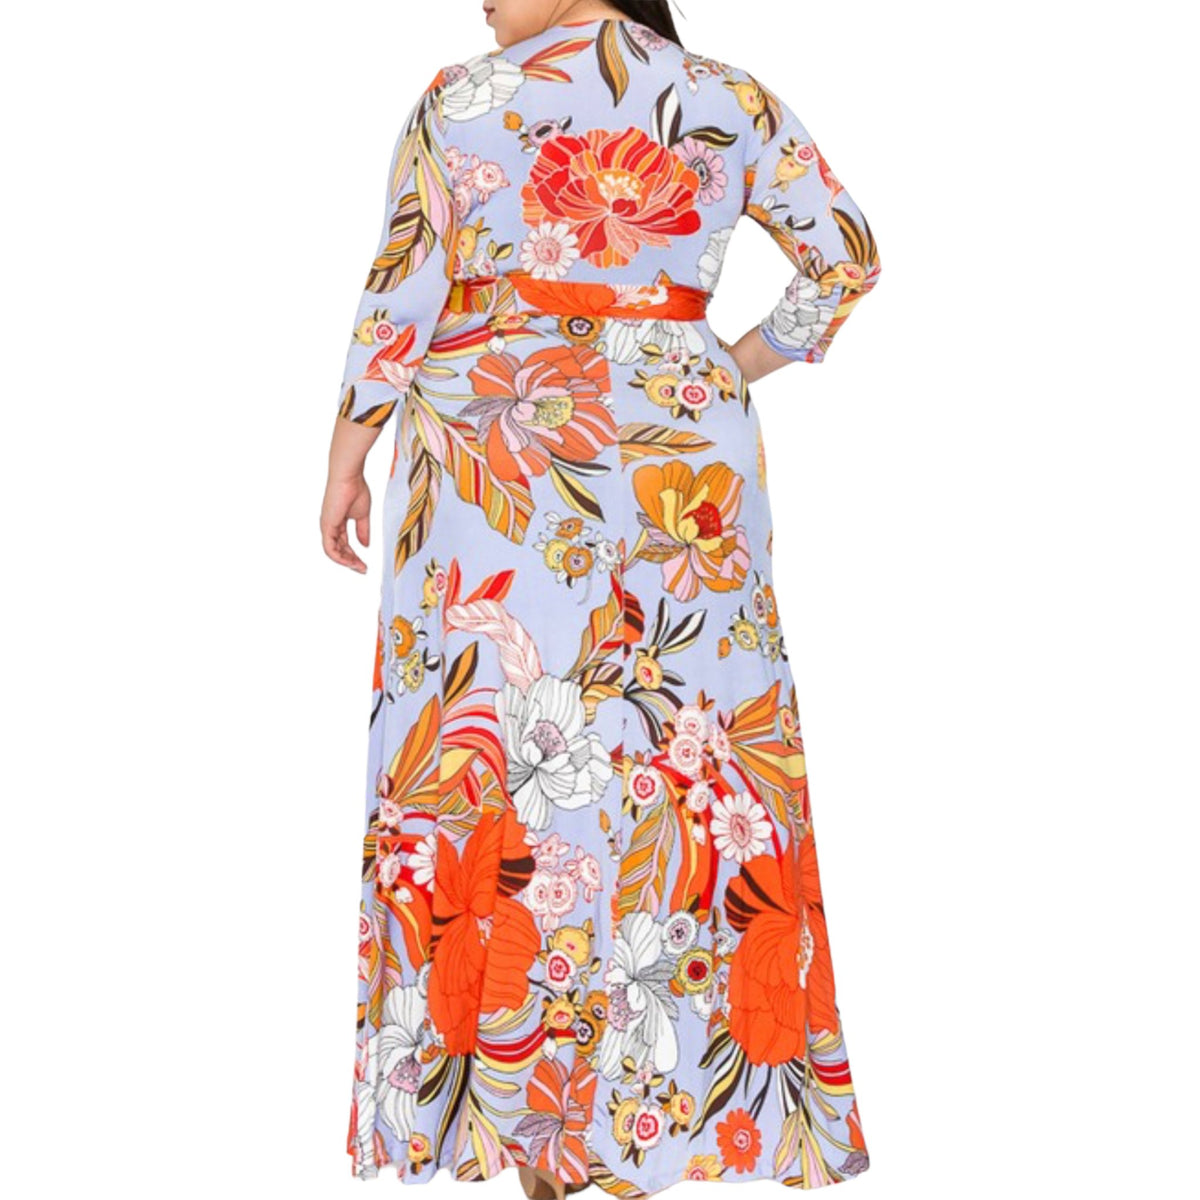 Plus Size Vibrant Floral Faux Wrap Maxi Dress - Fabulously Dressed Boutique 